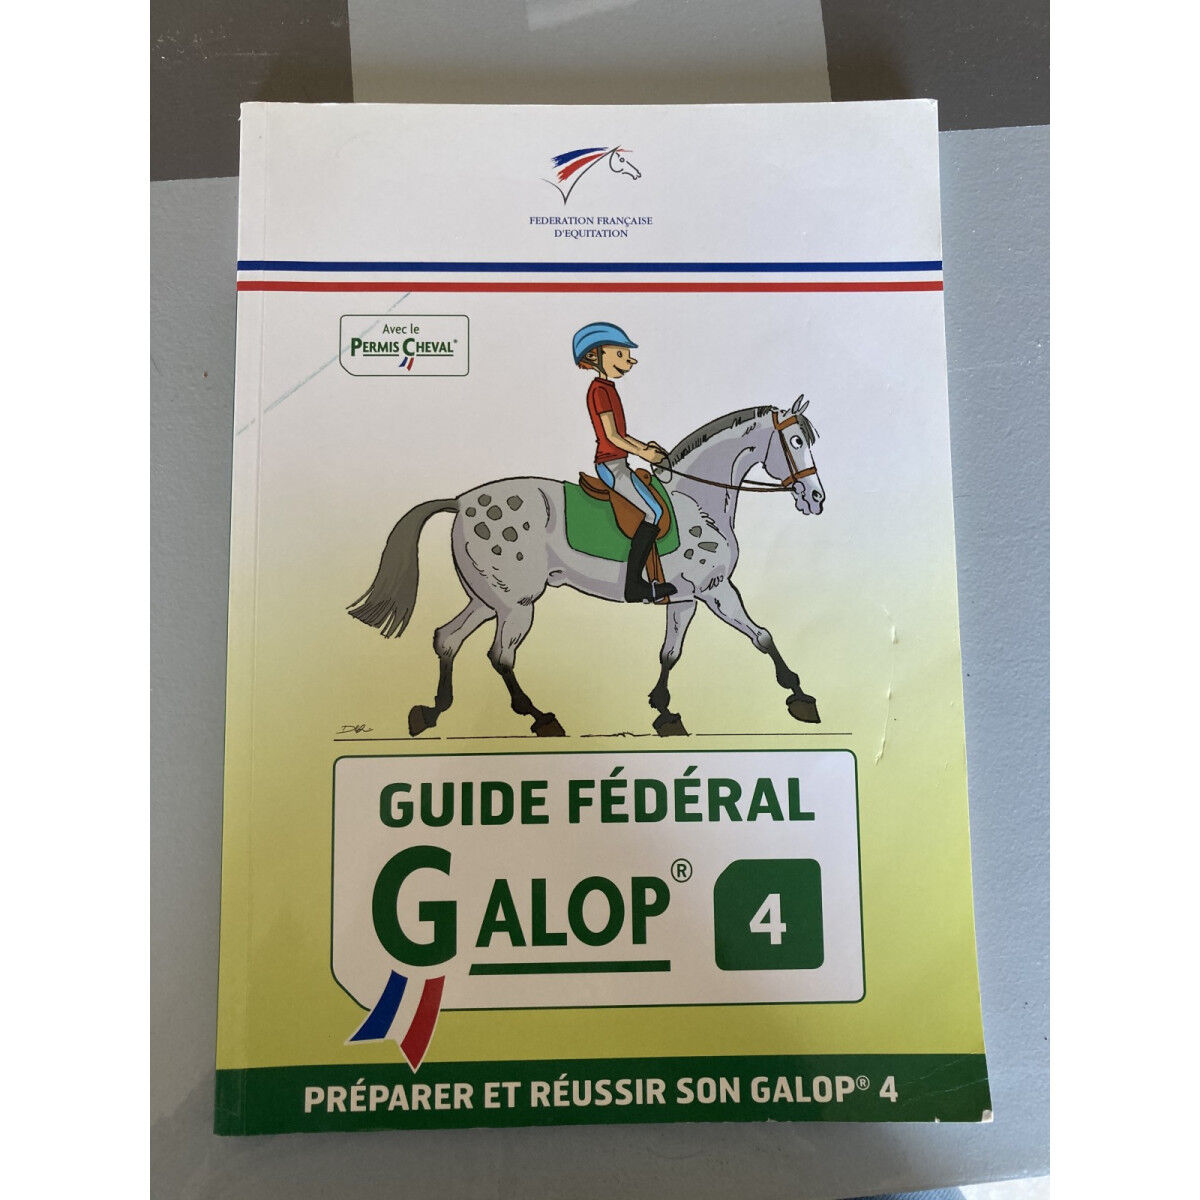 Guide fédéral - Galop 4, préparer et réussir son galop 4 - Ffe